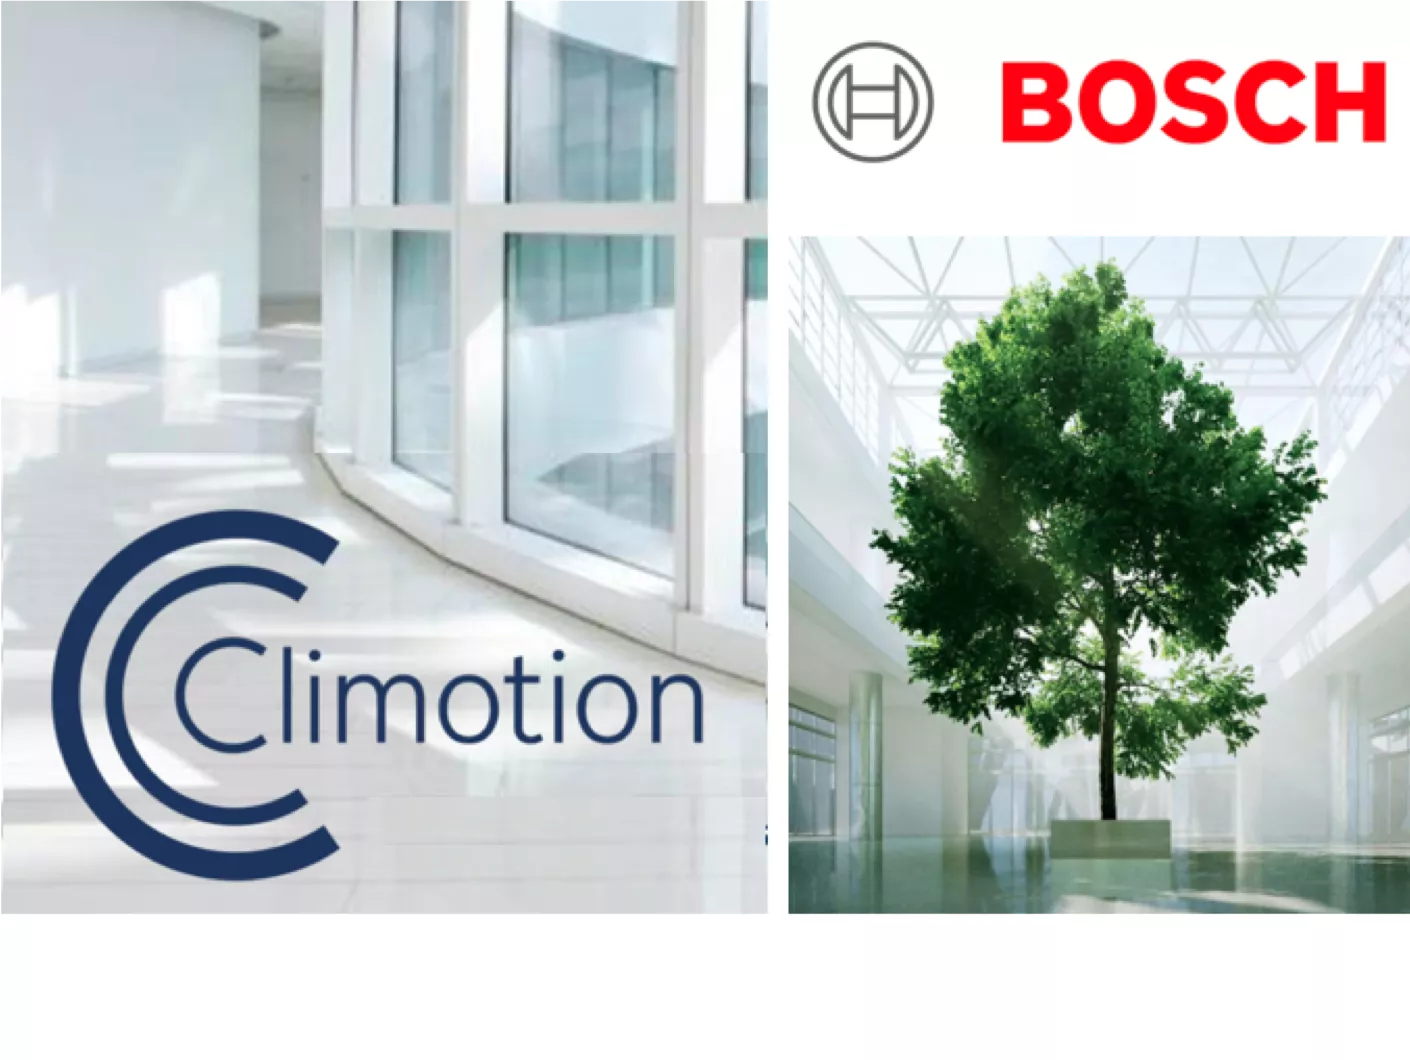 Das Climotion Logo zusammen mit dem Bosch Logo vor dem Hintergrundbild eines modernen Gebäudes mit viel Glas und einem großen Baum in der Mitte. 